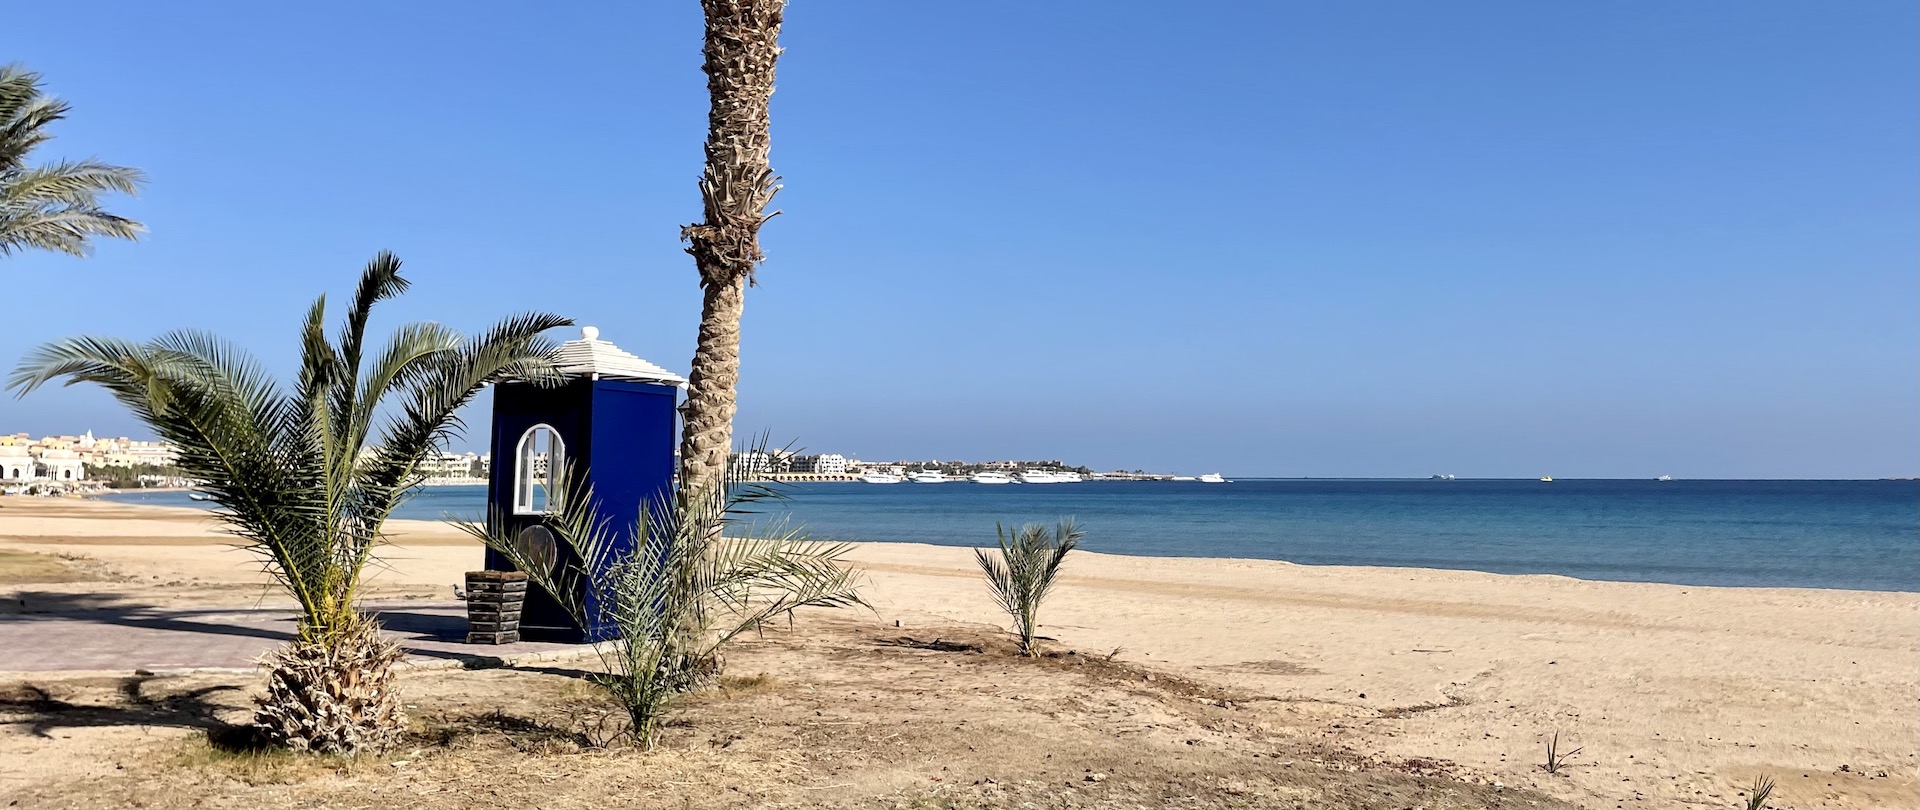 Hurghada oder Sahl Hasheesh jetzt Hotel Traumurlaub buchen mit Frühbucher Rabatt